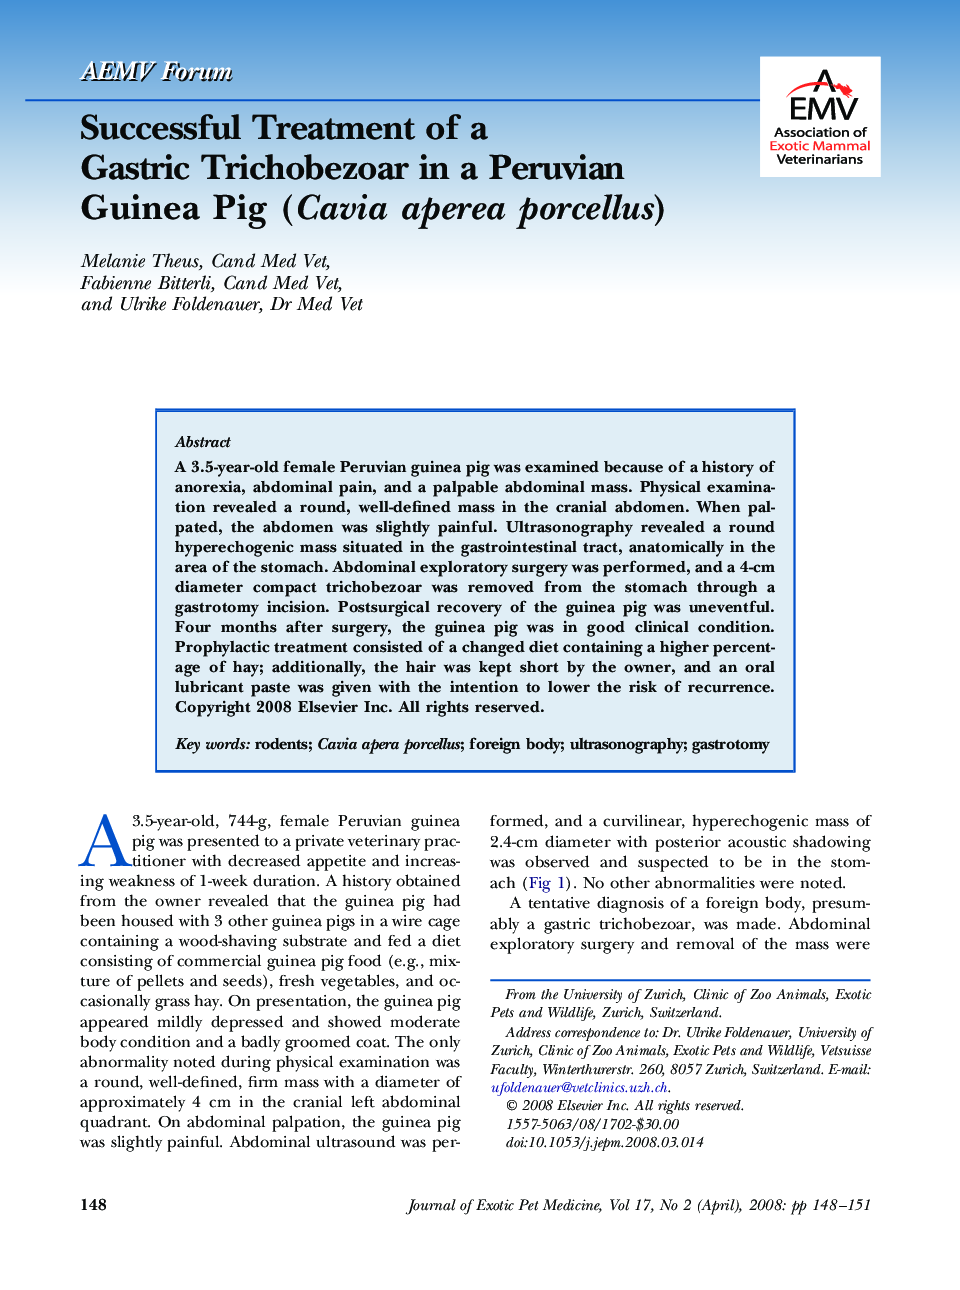 Successful Treatment of a Gastric Trichobezoar in a Peruvian Guinea Pig (Cavia aperea porcellus)